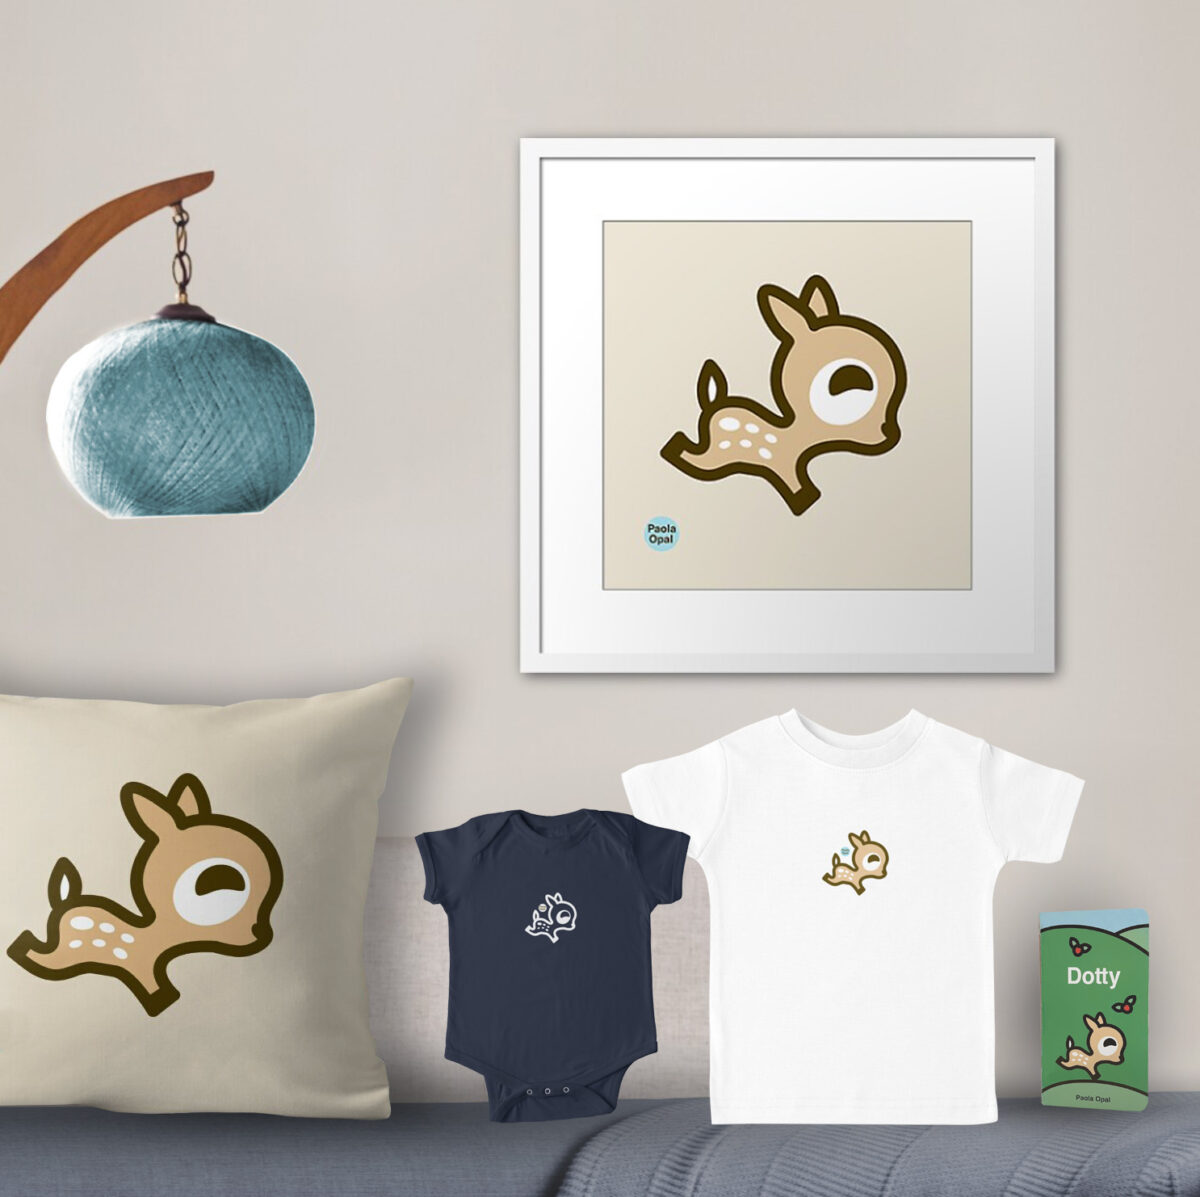 Dotty the deer framed art print, throw pillow, baby onesie, t-shirt, and board book